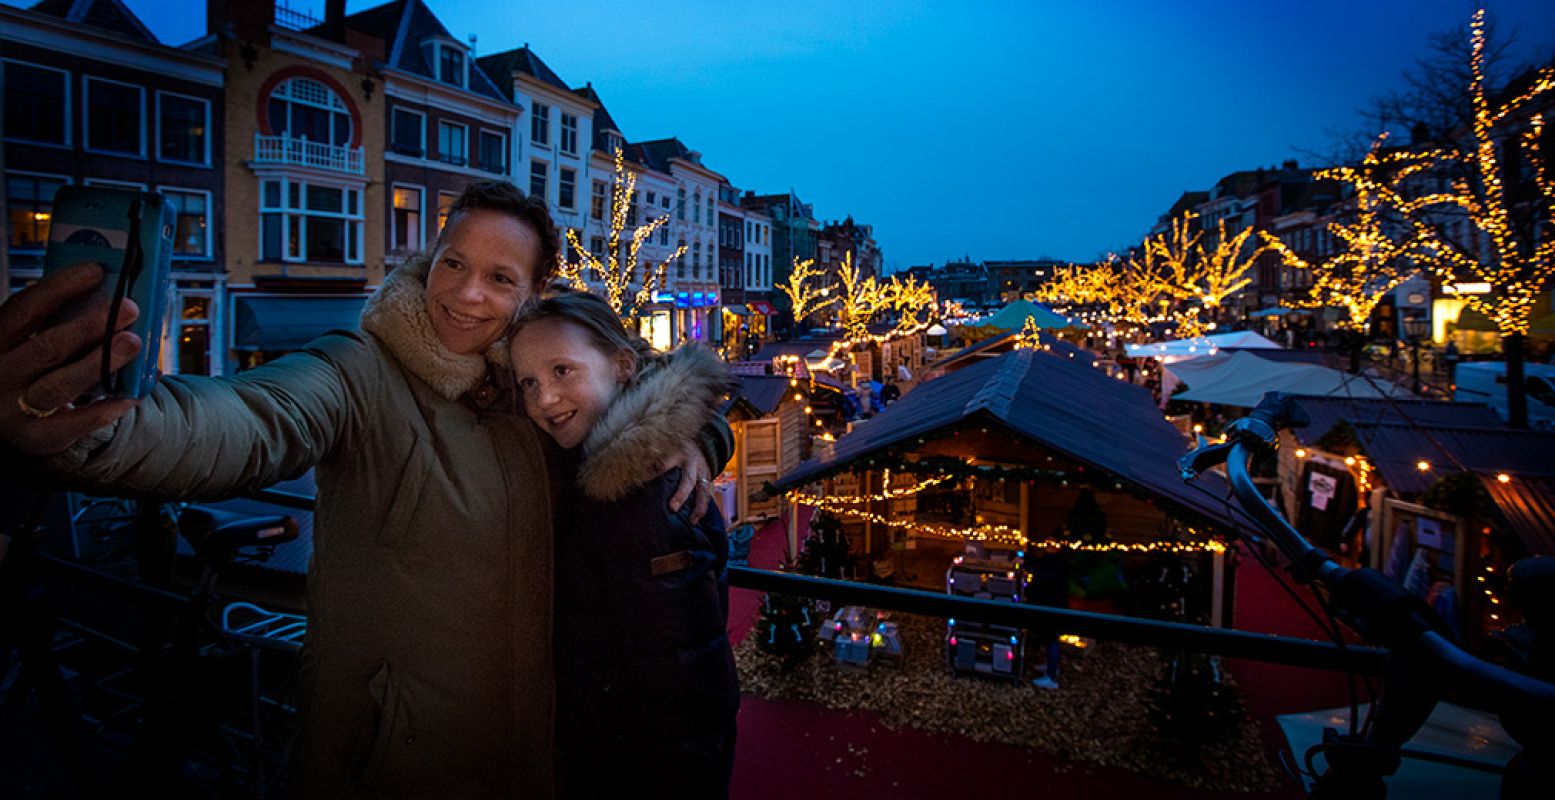 Neem de ultieme kerst selfie vanaf de 'selfie brug'. Foto: Leiden Marketing